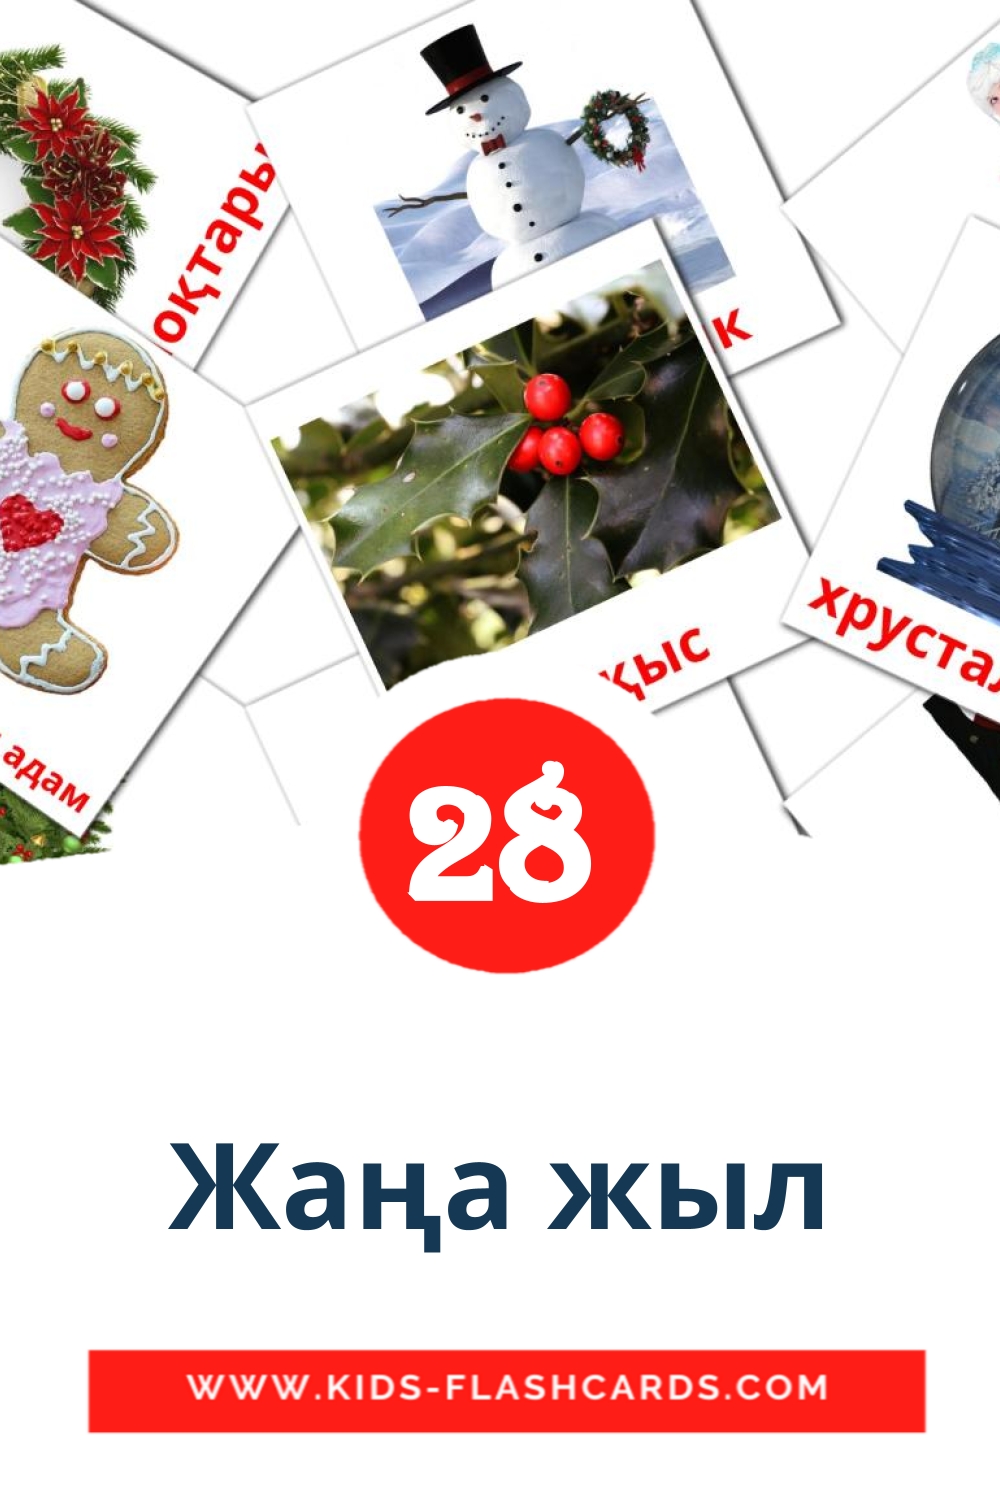 28 Cartões com Imagens de Жаңа жыл para Jardim de Infância em kazakh